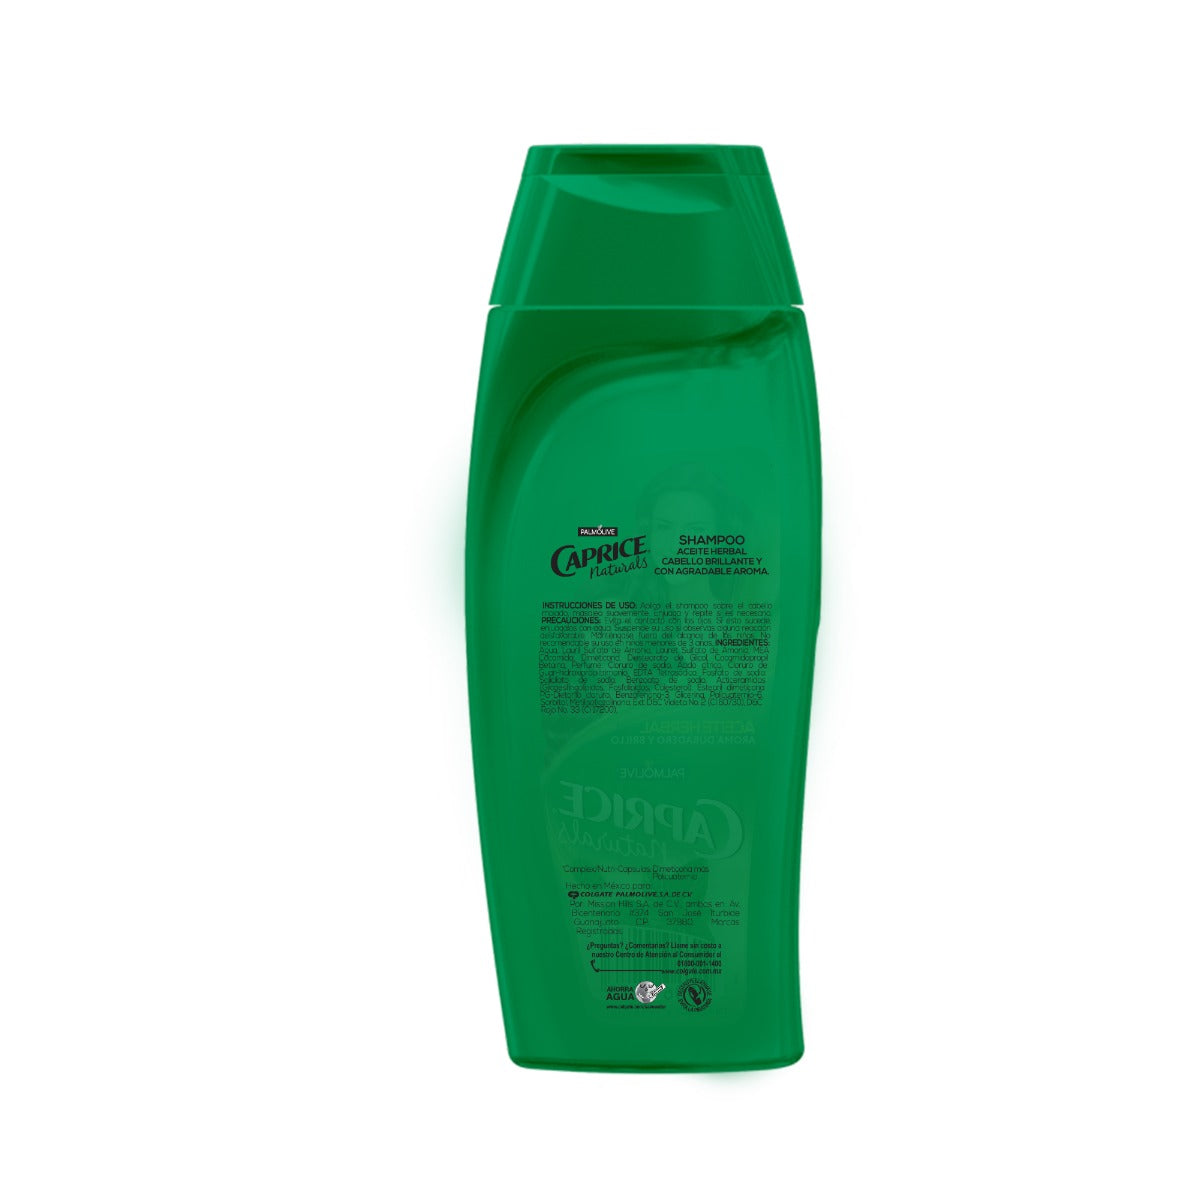 Shampoo Caprice Naturals Aceite Herbal Aroma Duradero y Brillo de 200 ml